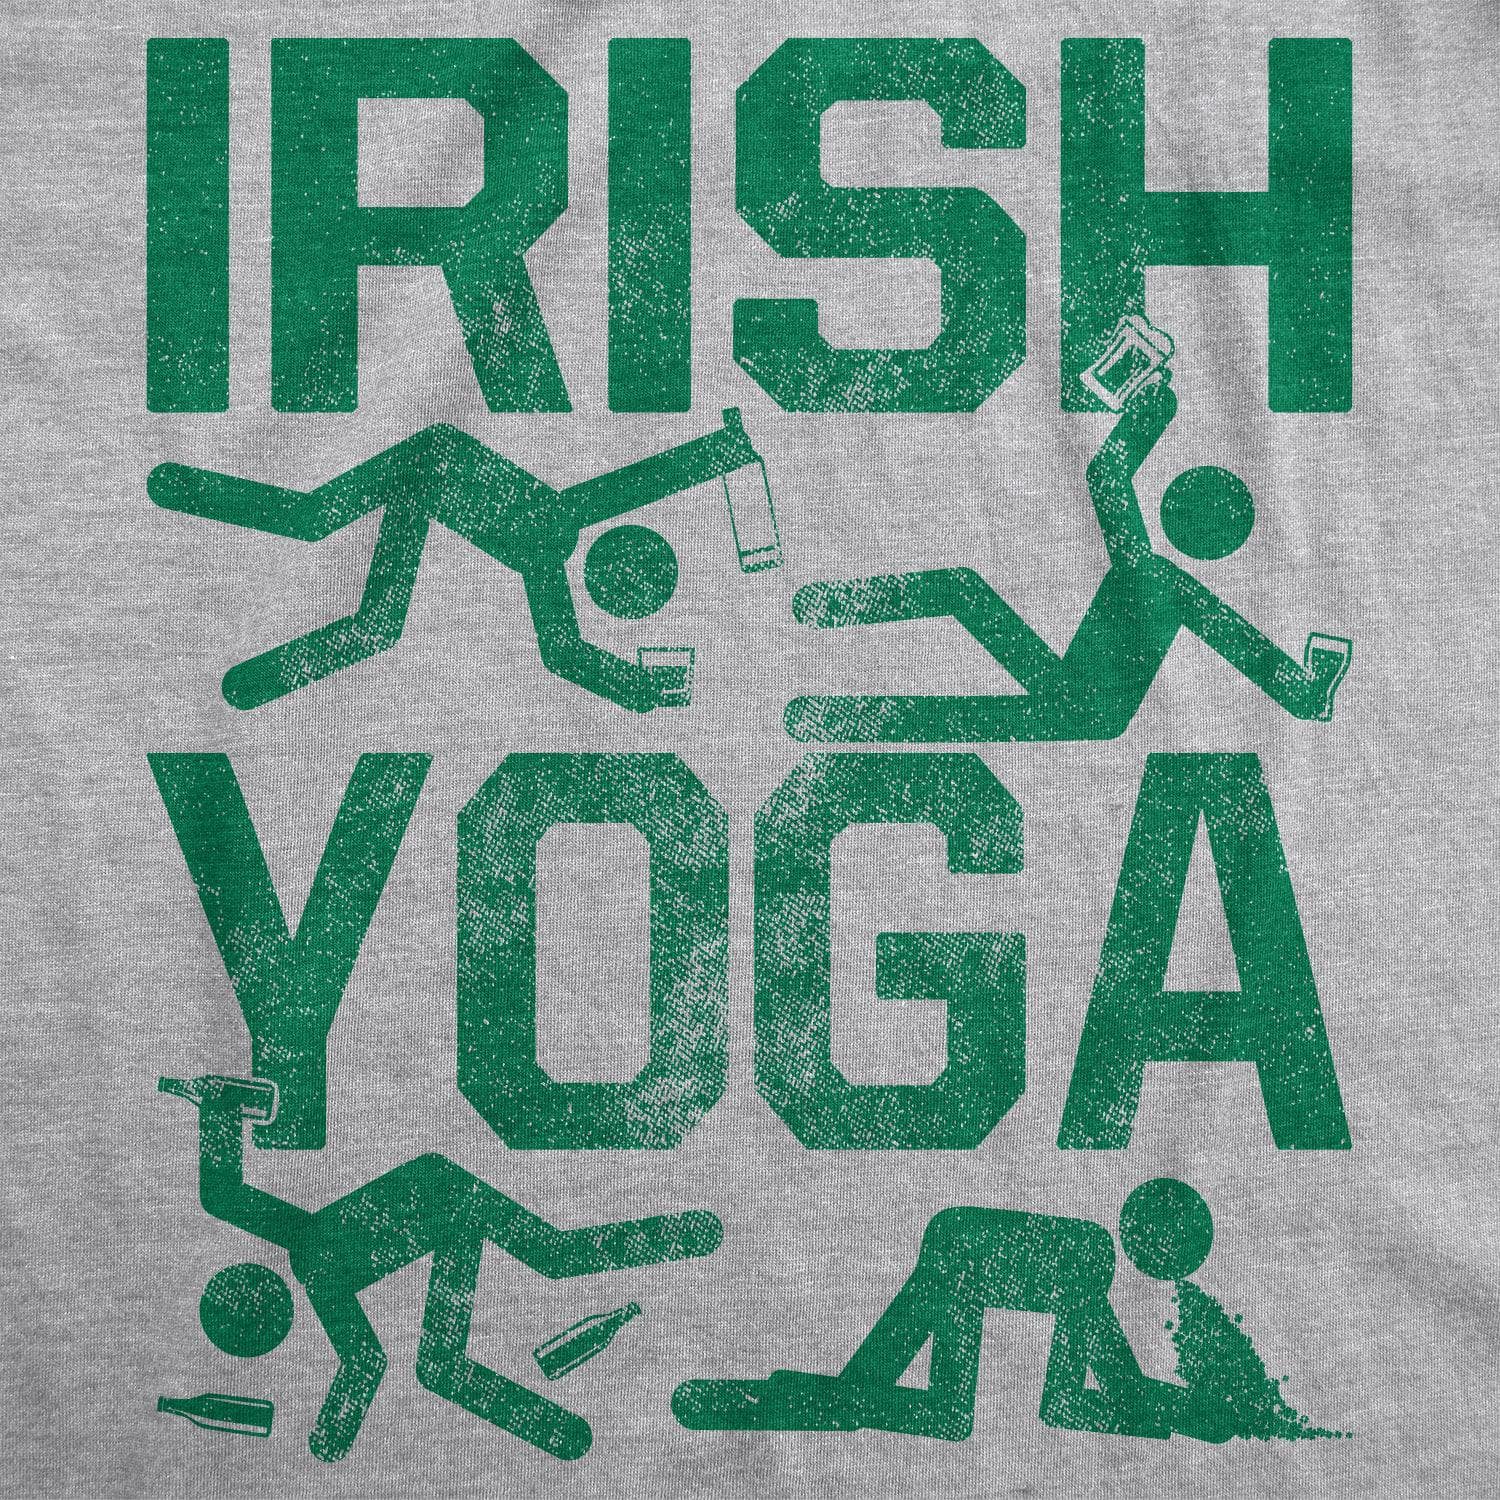 Irish Yoga Women's Tshirt  -  Crazy Dog T-Shirts